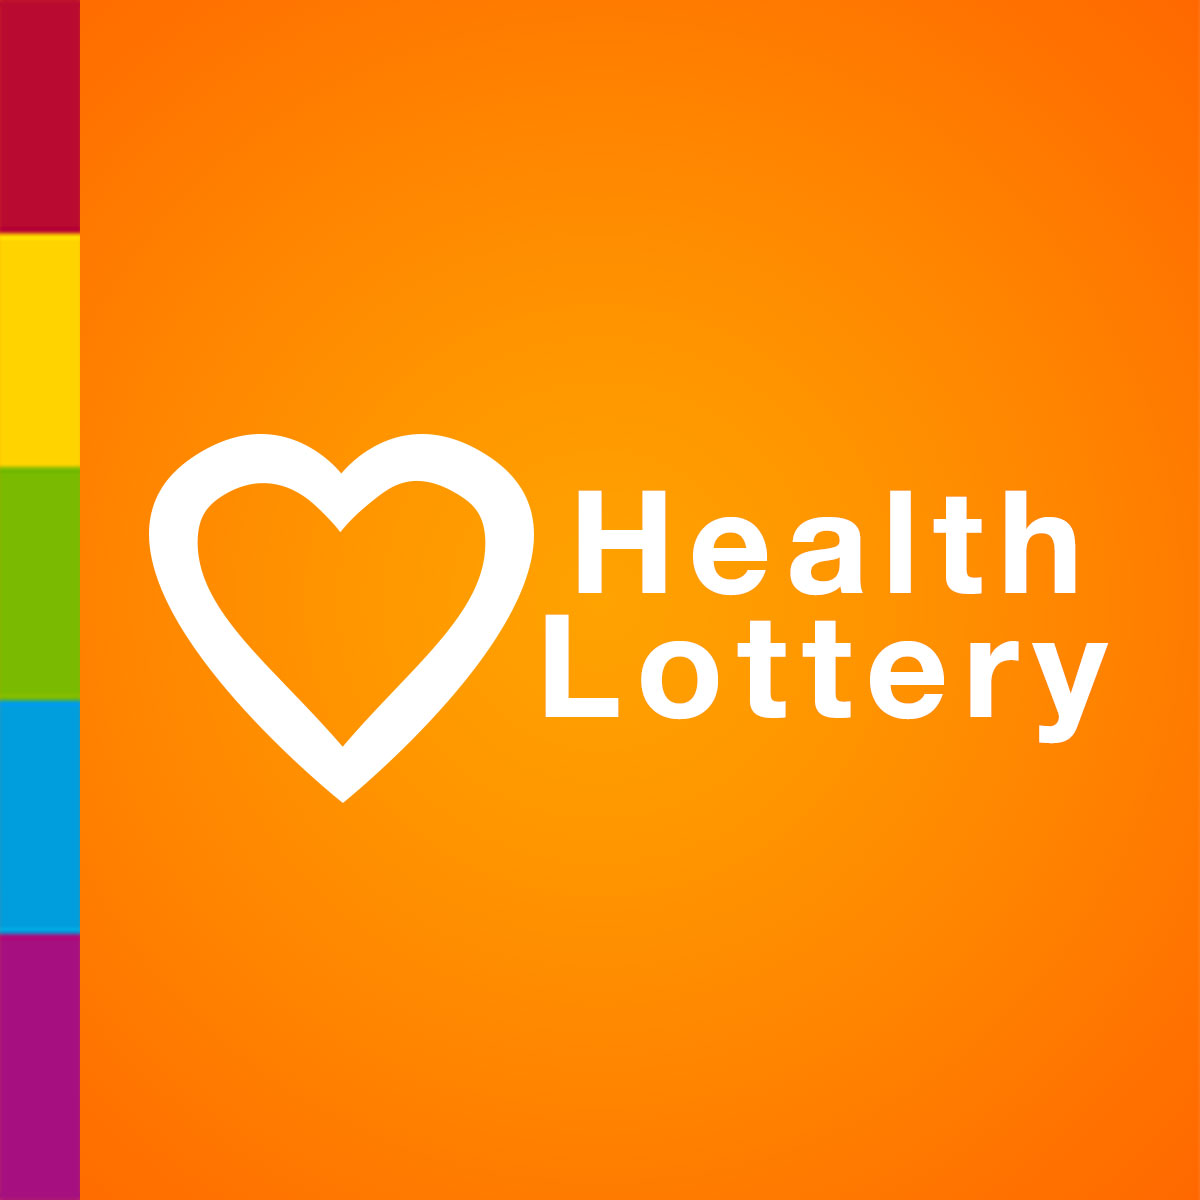 lotto results health